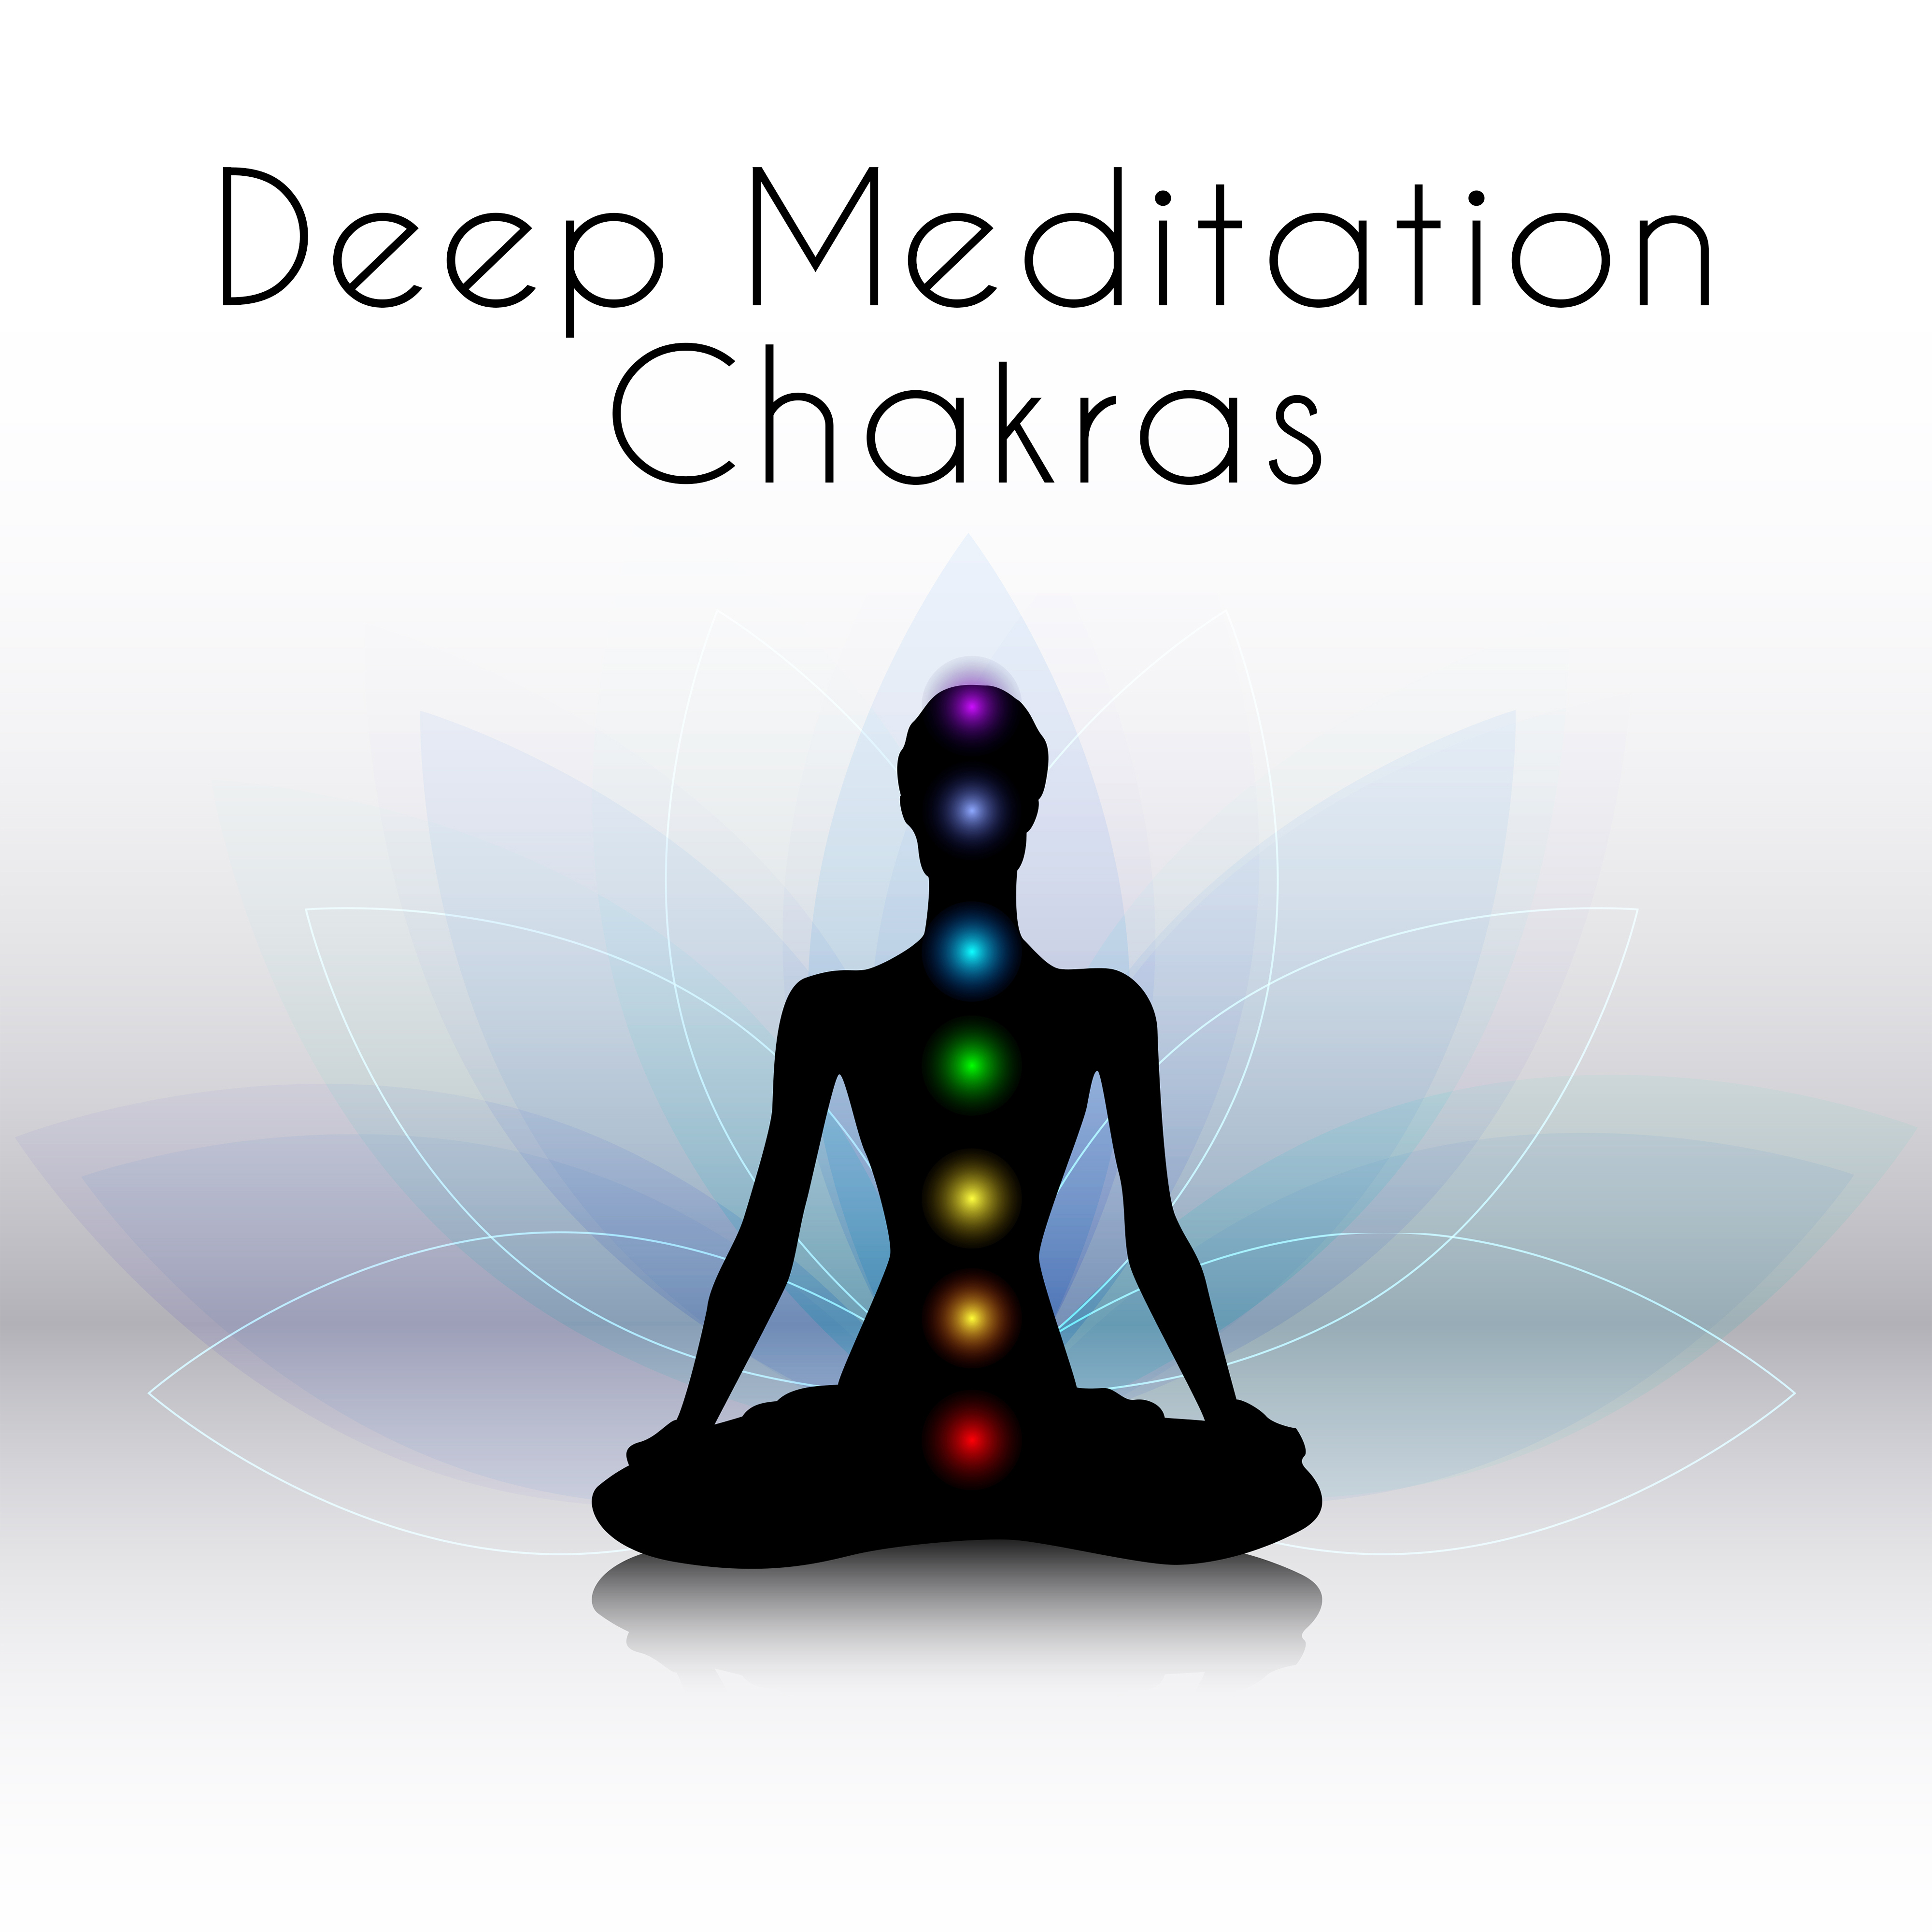 Peaceful Deep Meditation